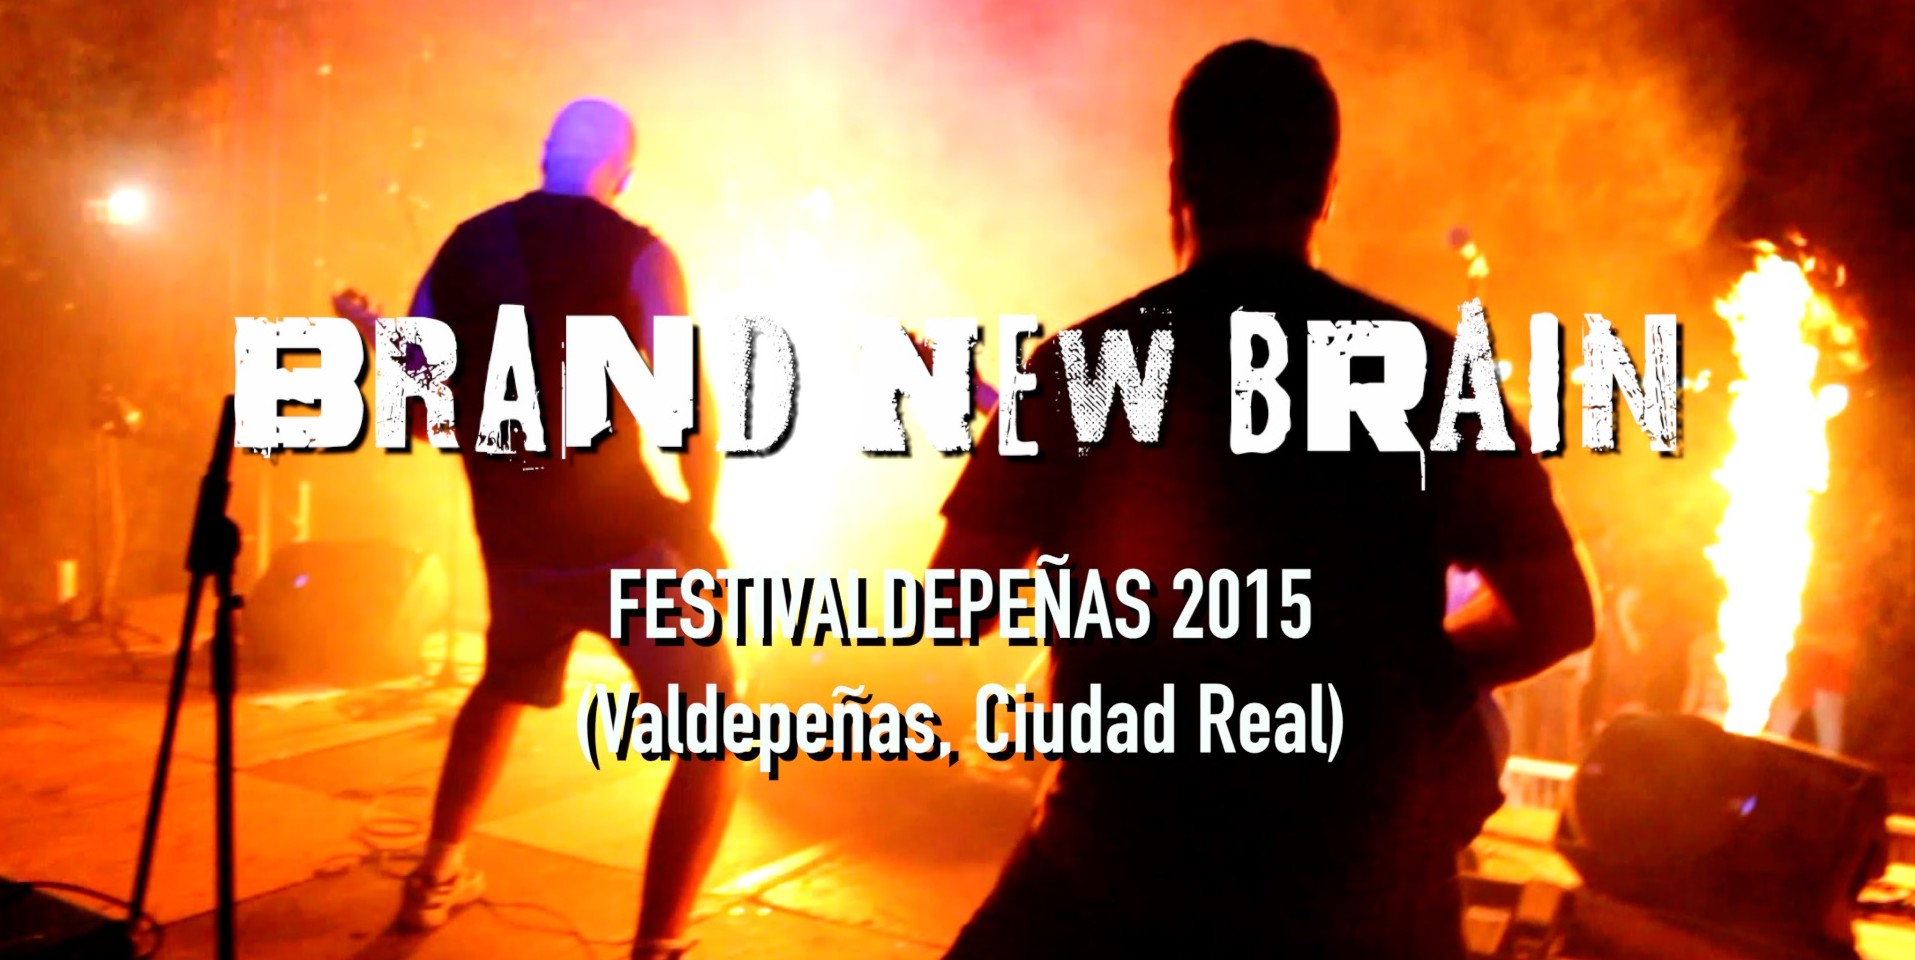 FestiValdepeñas 2015 - Concierto completo, terminado de editar en vídeo, publicado en YouTube